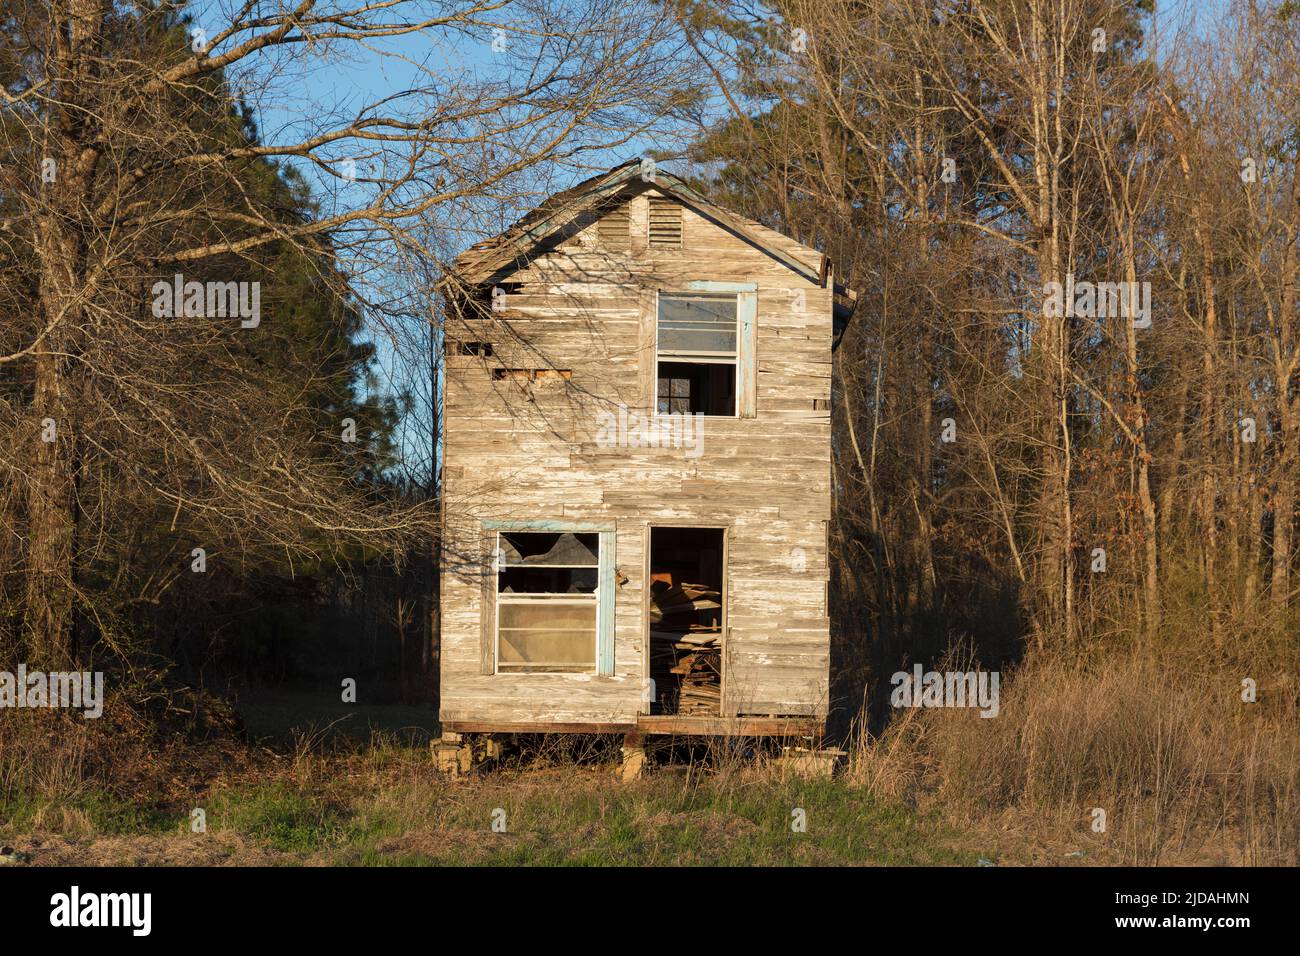 Ein ländliches Gehöft oder kleines Haus verlassen und zerbröckelt, überwuchert mit Pflanzen und Sträuchern. Stockfoto